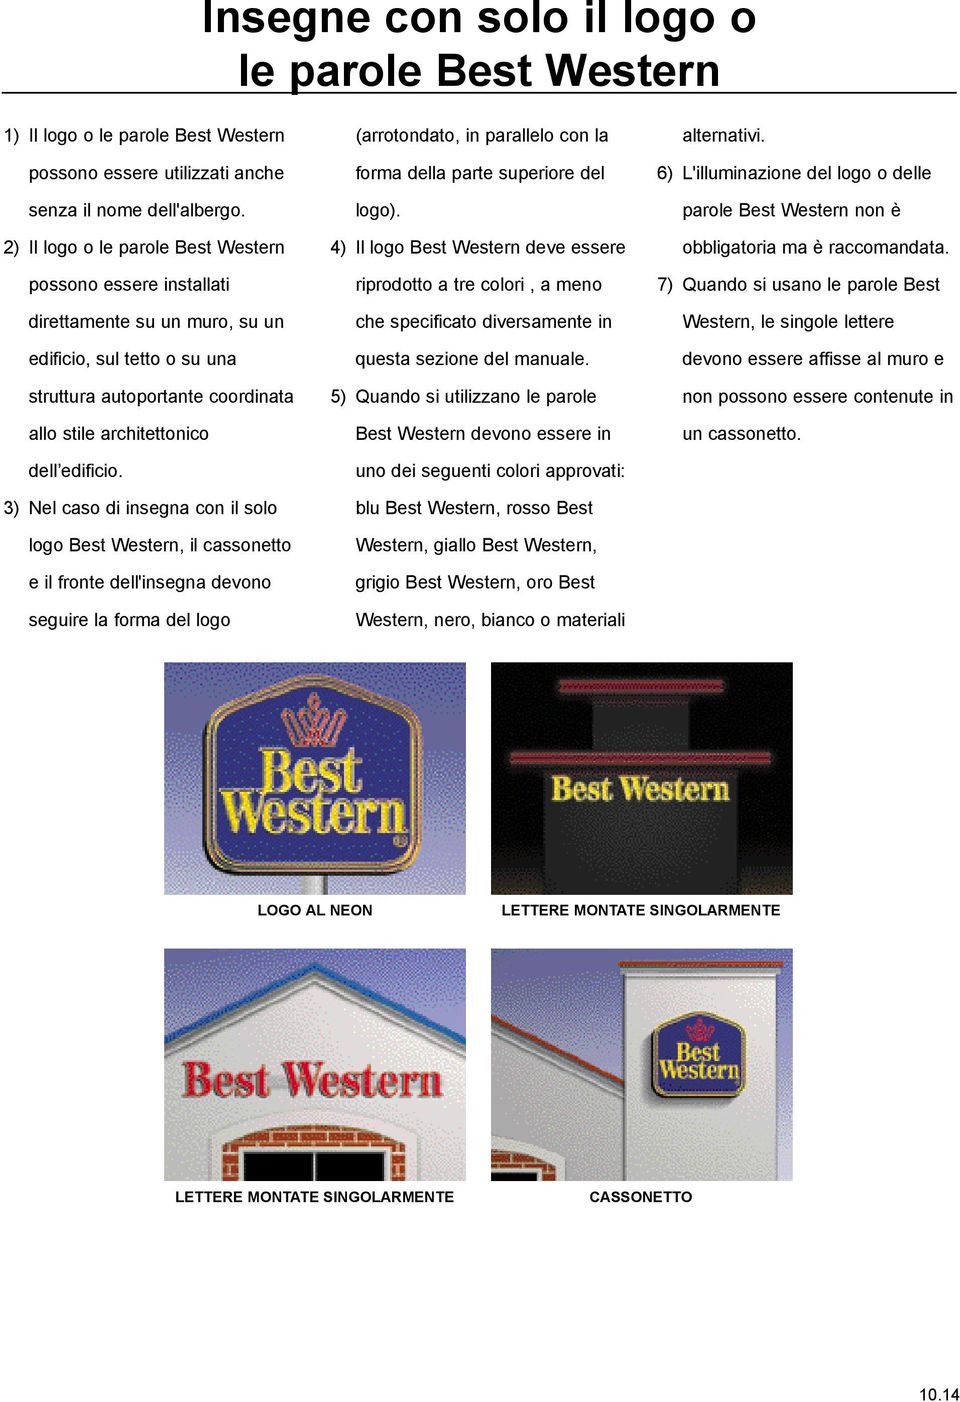 3) Nel caso di insegna con il solo logo Best Western, il cassonetto e il fronte dell'insegna devono seguire la forma del logo (arrotondato, in parallelo con la forma della parte superiore del logo).